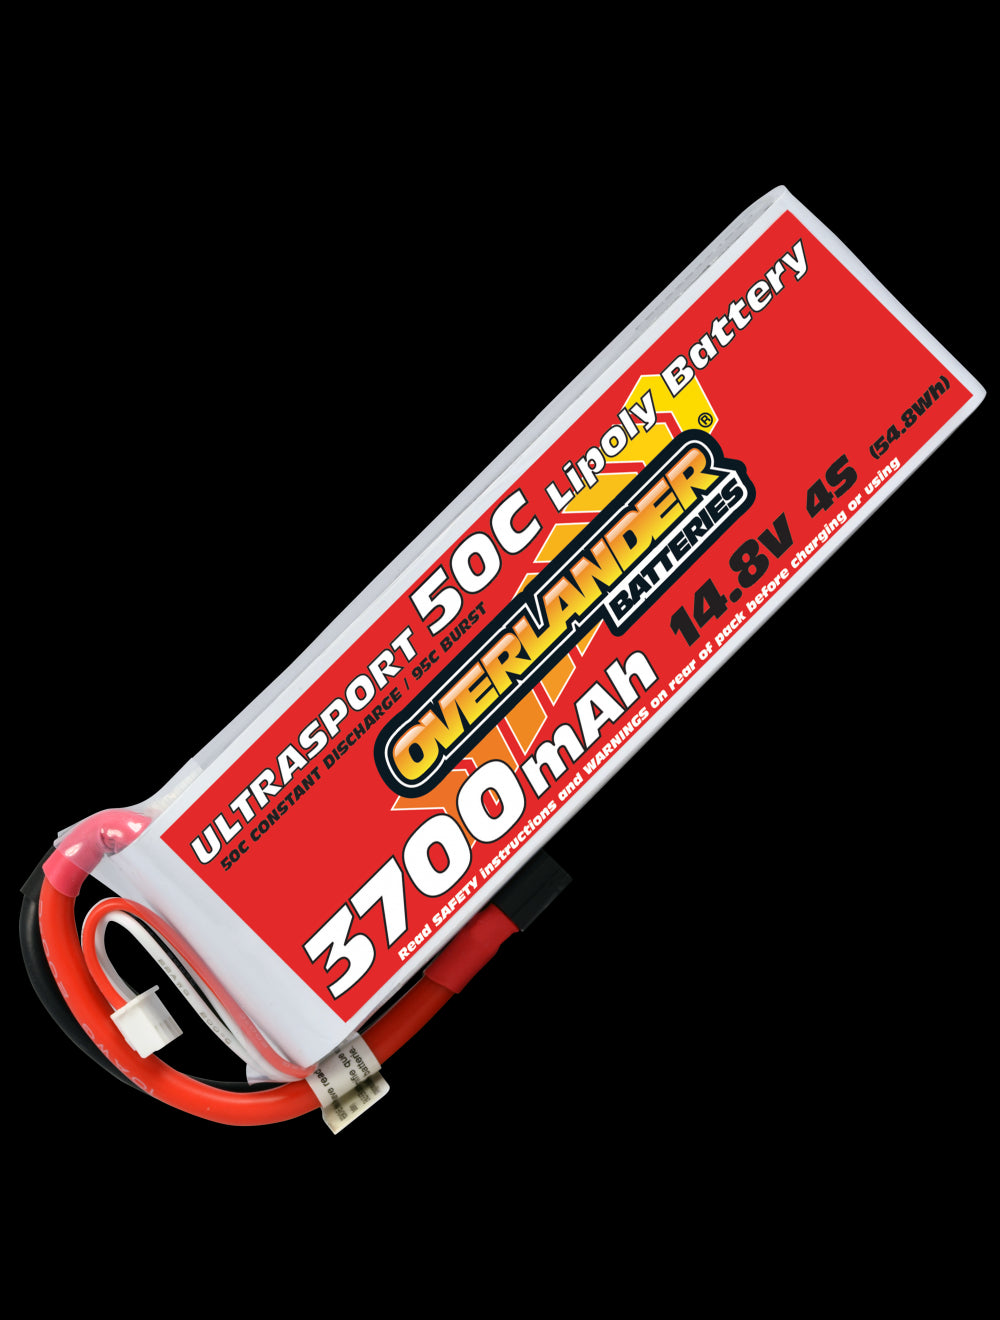 Overlander 3700mAh 14.8V 4S 50C Ultrasport LiPo Battery - EC3 Connector 2629